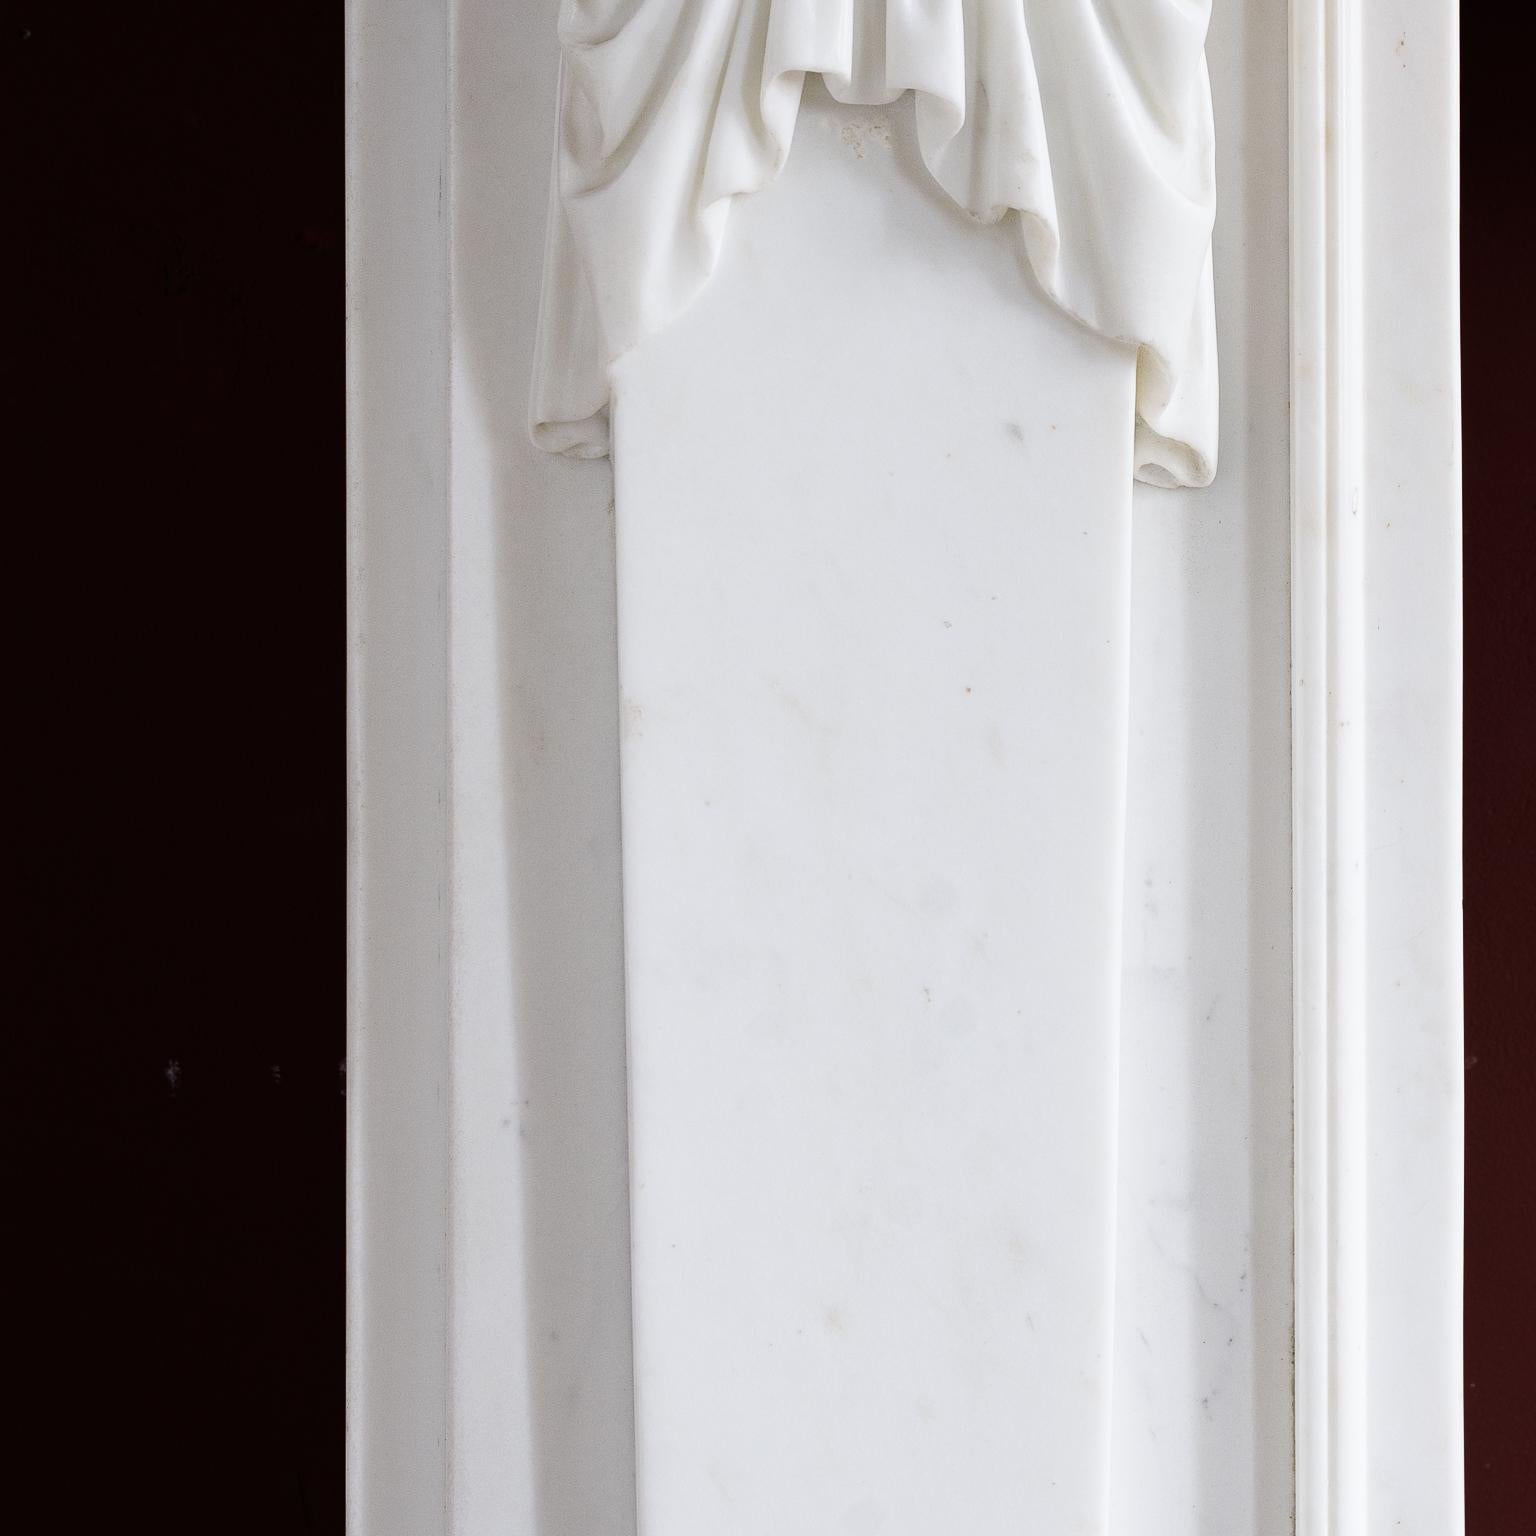 Bildhauer-Marmorkamin im Regency-Stil im ägyptischen Stil (Bildhauermarmor)